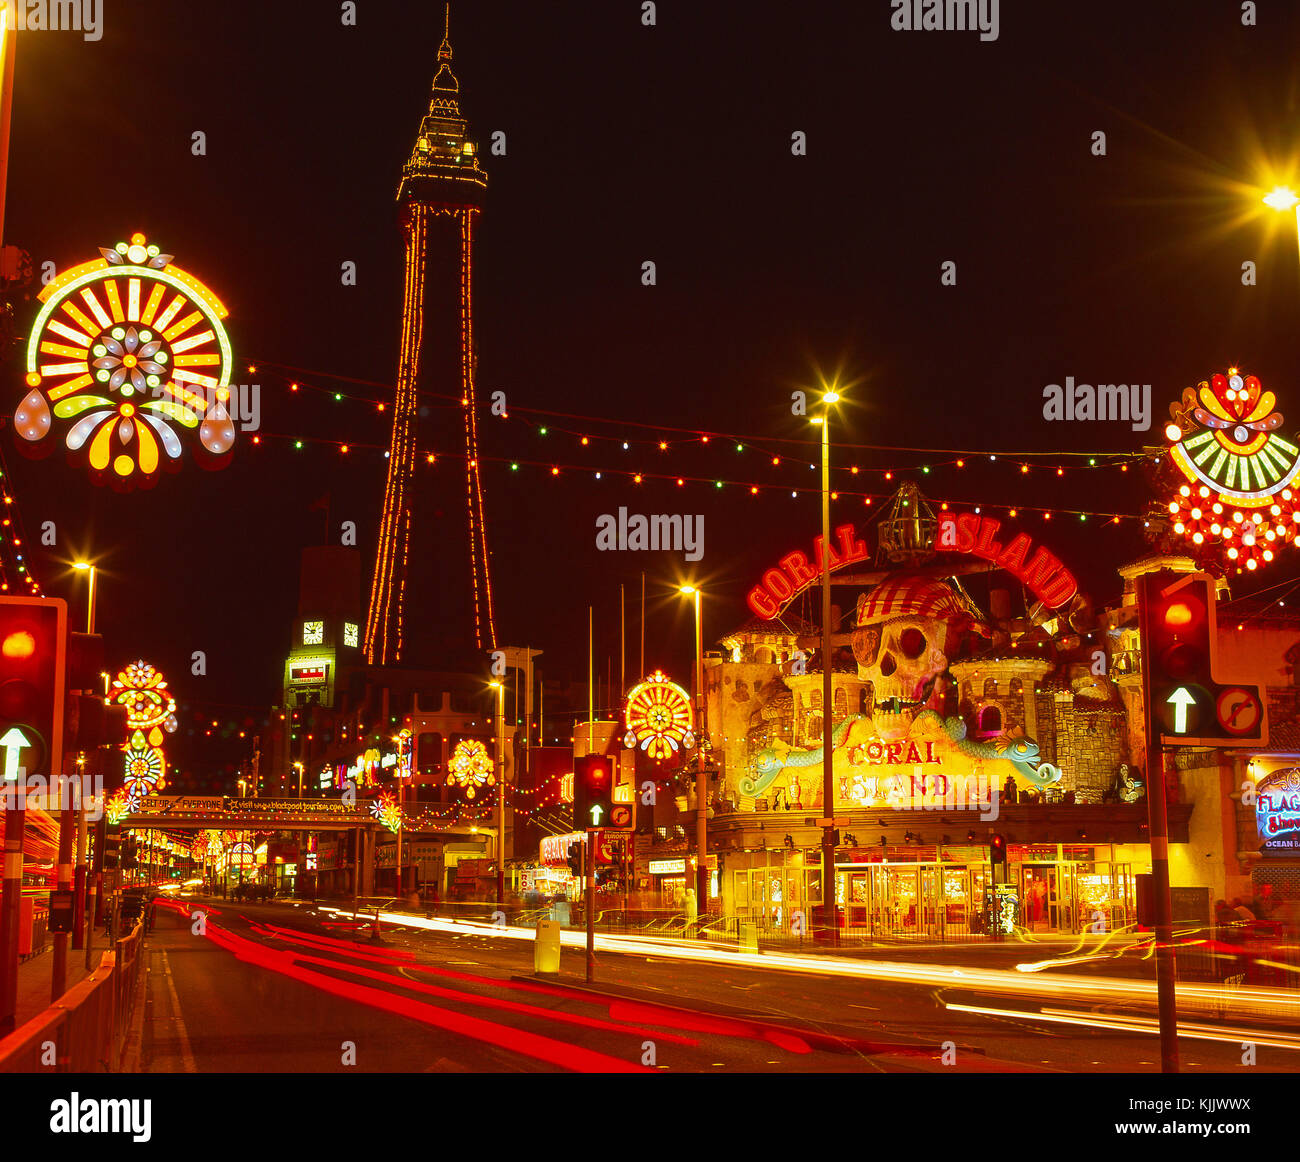 Scène colorée dans le centre de Blackpool illuminations pendant la fin de l'été à partir de la Promenade, Blackpool, Lancashire, Angleterre Banque D'Images